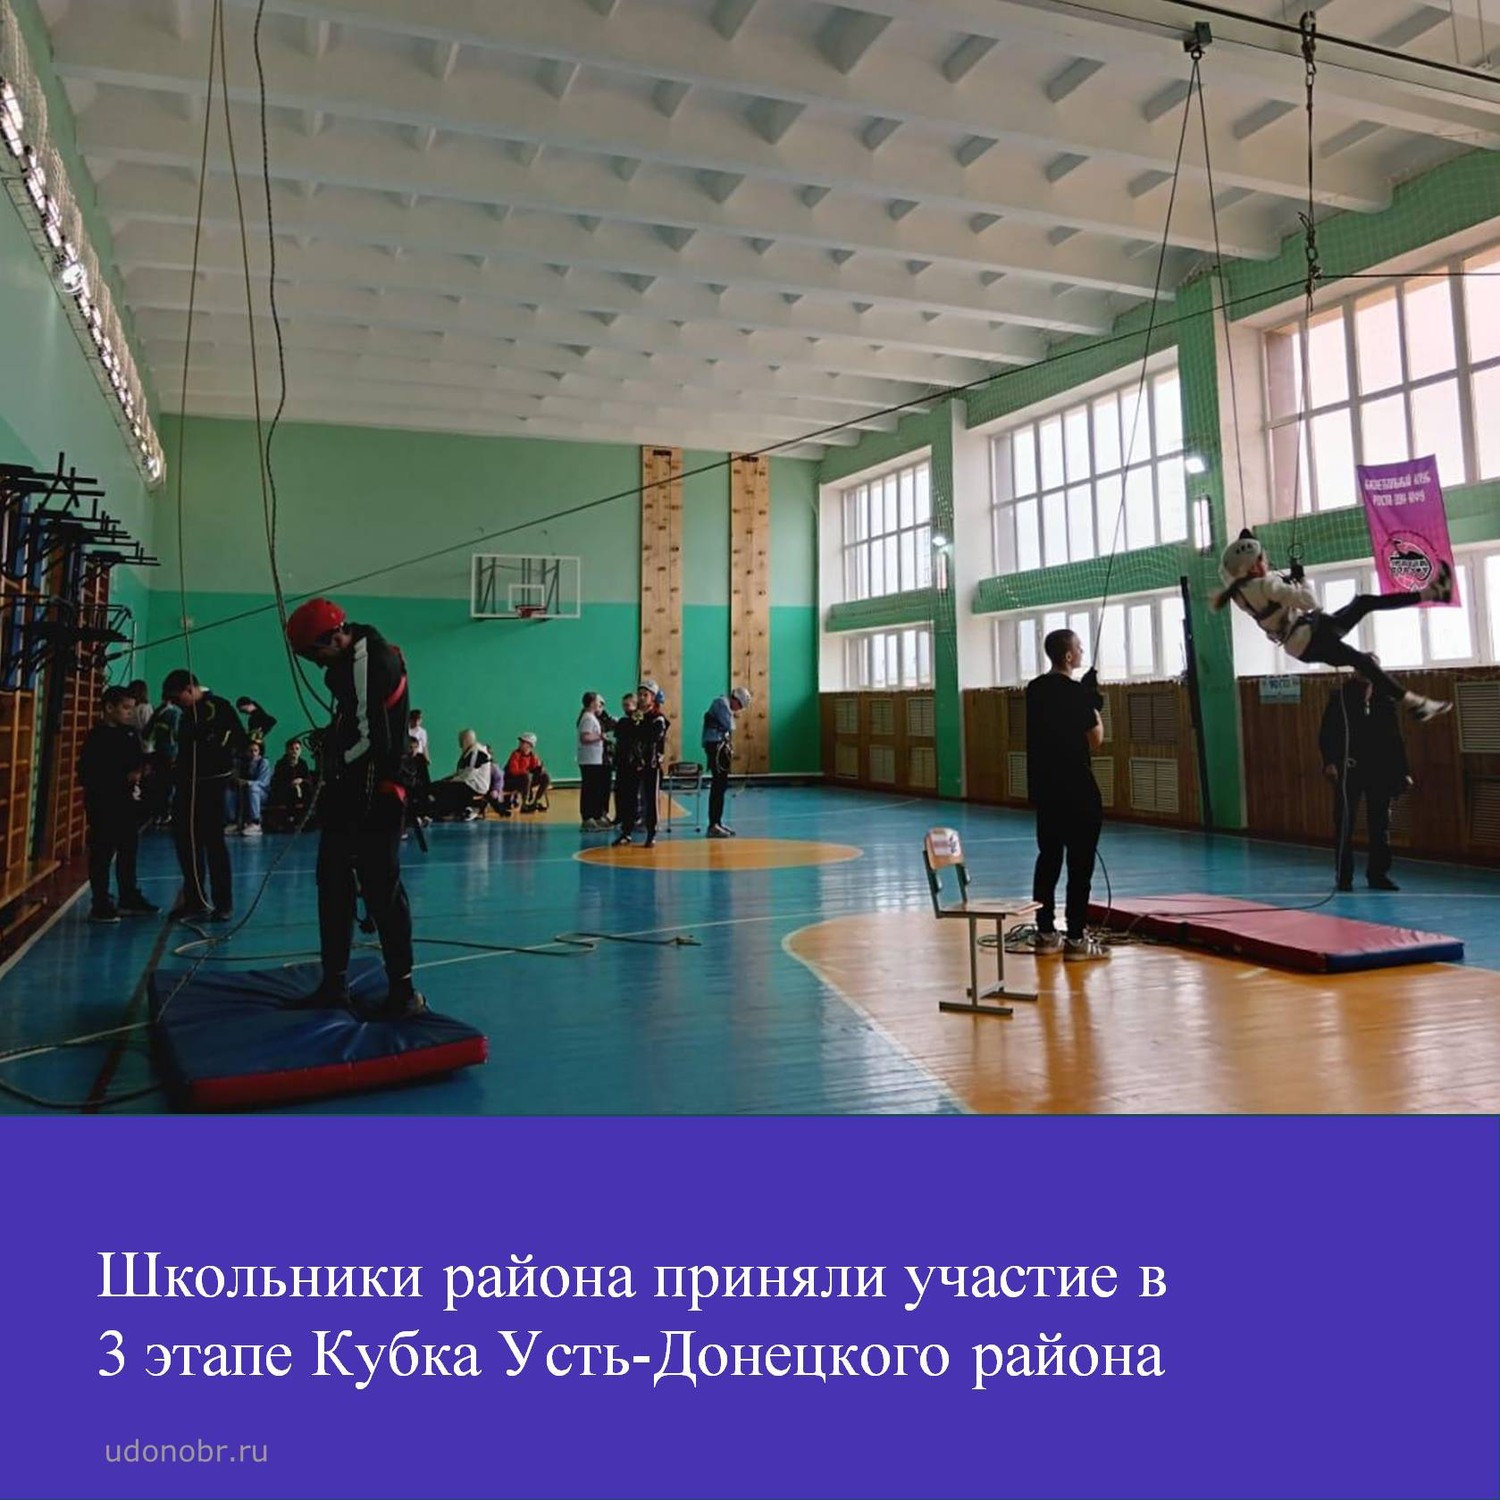 Школьники района приняли участие в 3 этапе Кубка Усть-Донецкого района по спортивному ориентированию и спортивному туризму.